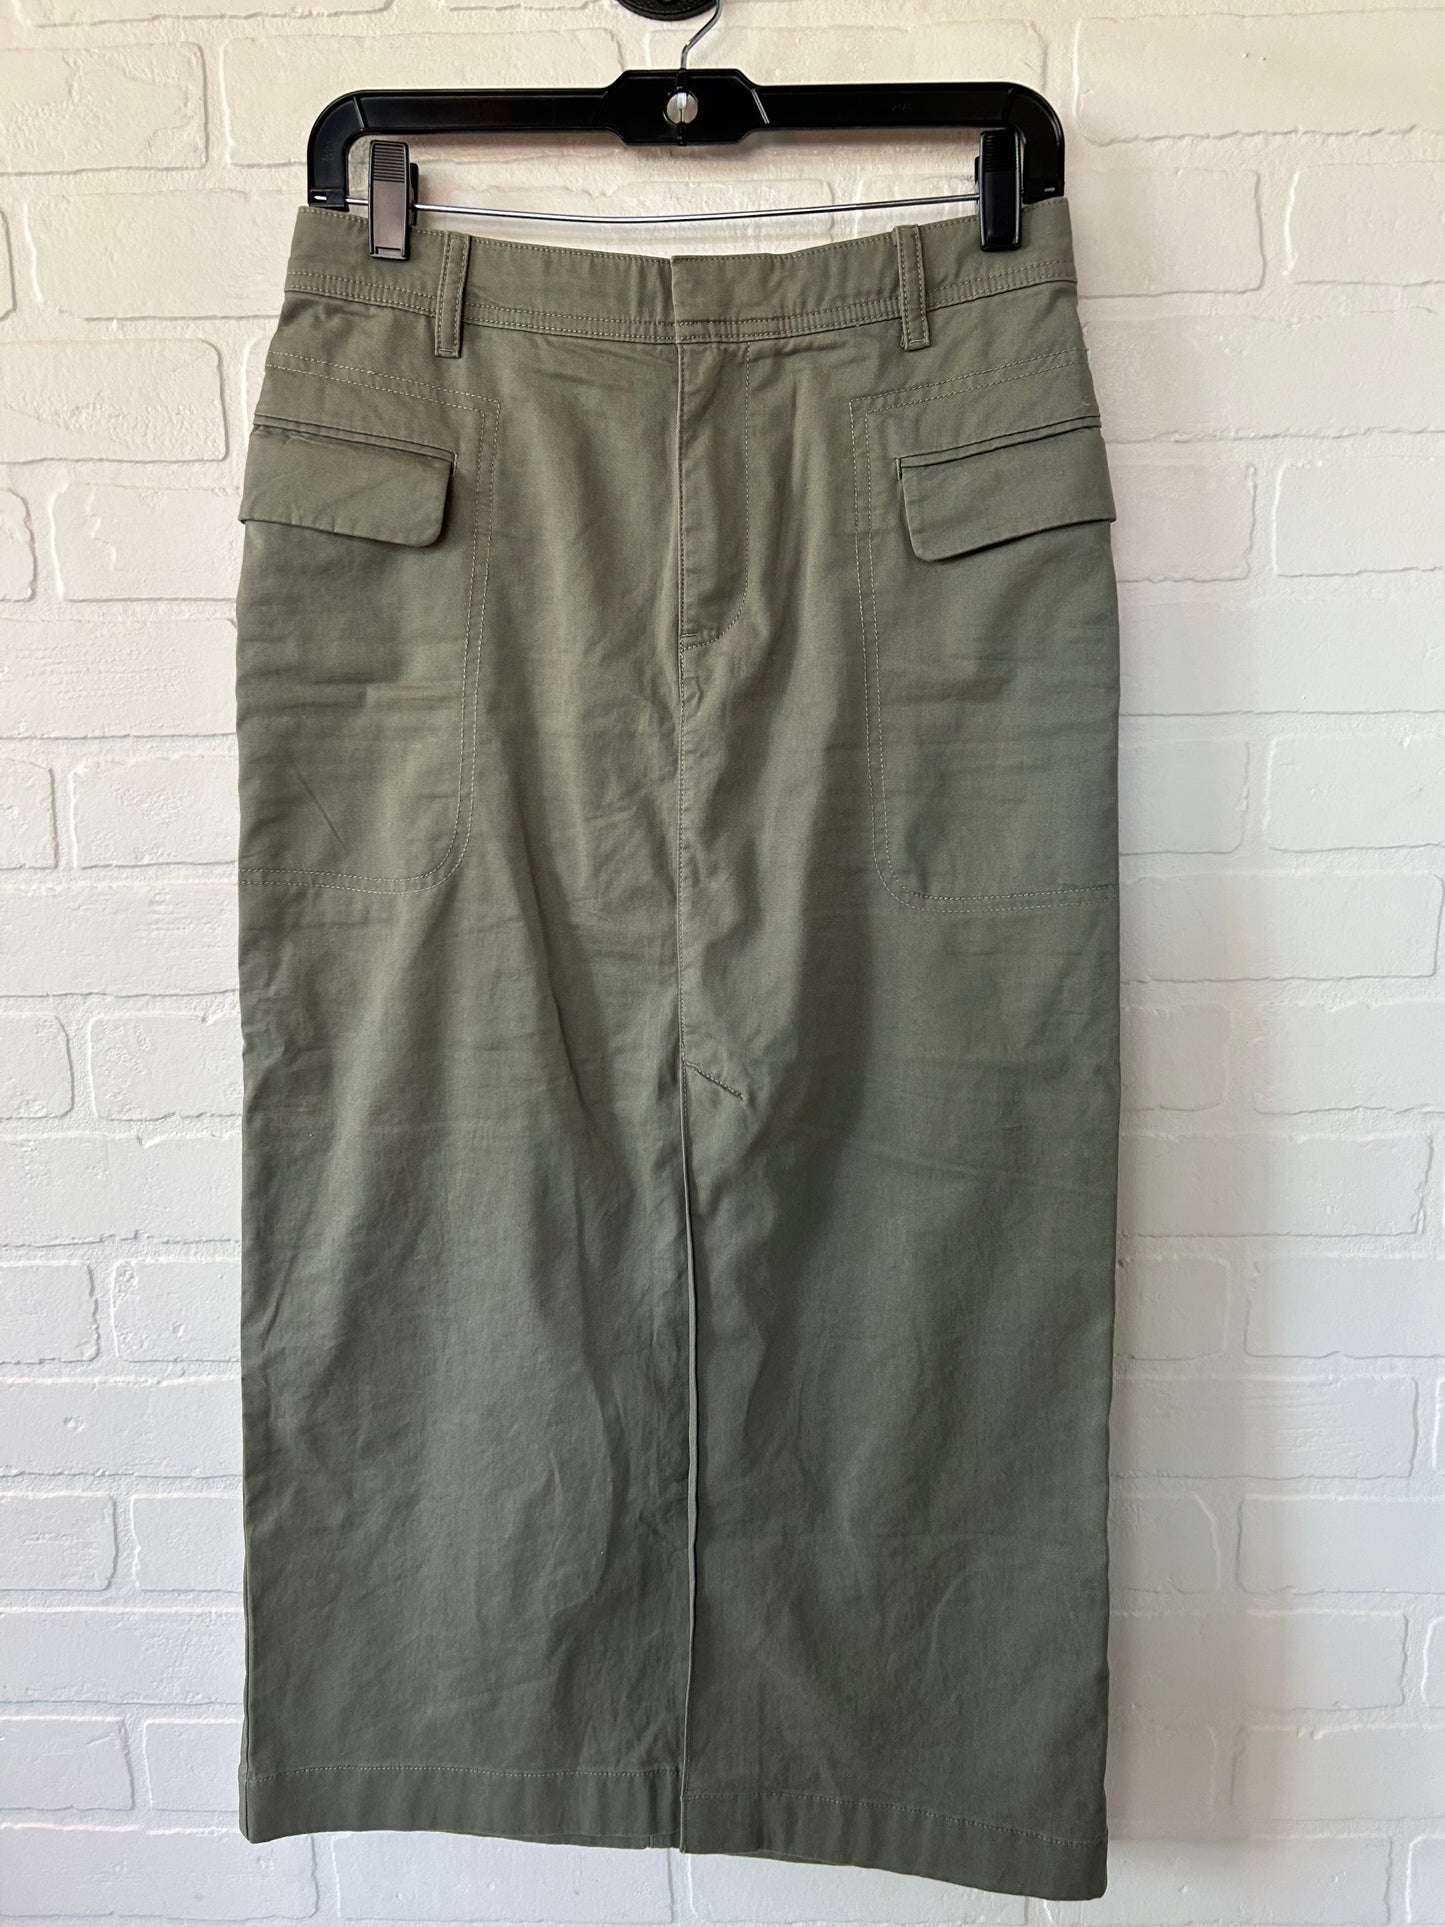 Green Skirt Maxi Gap, Size 4